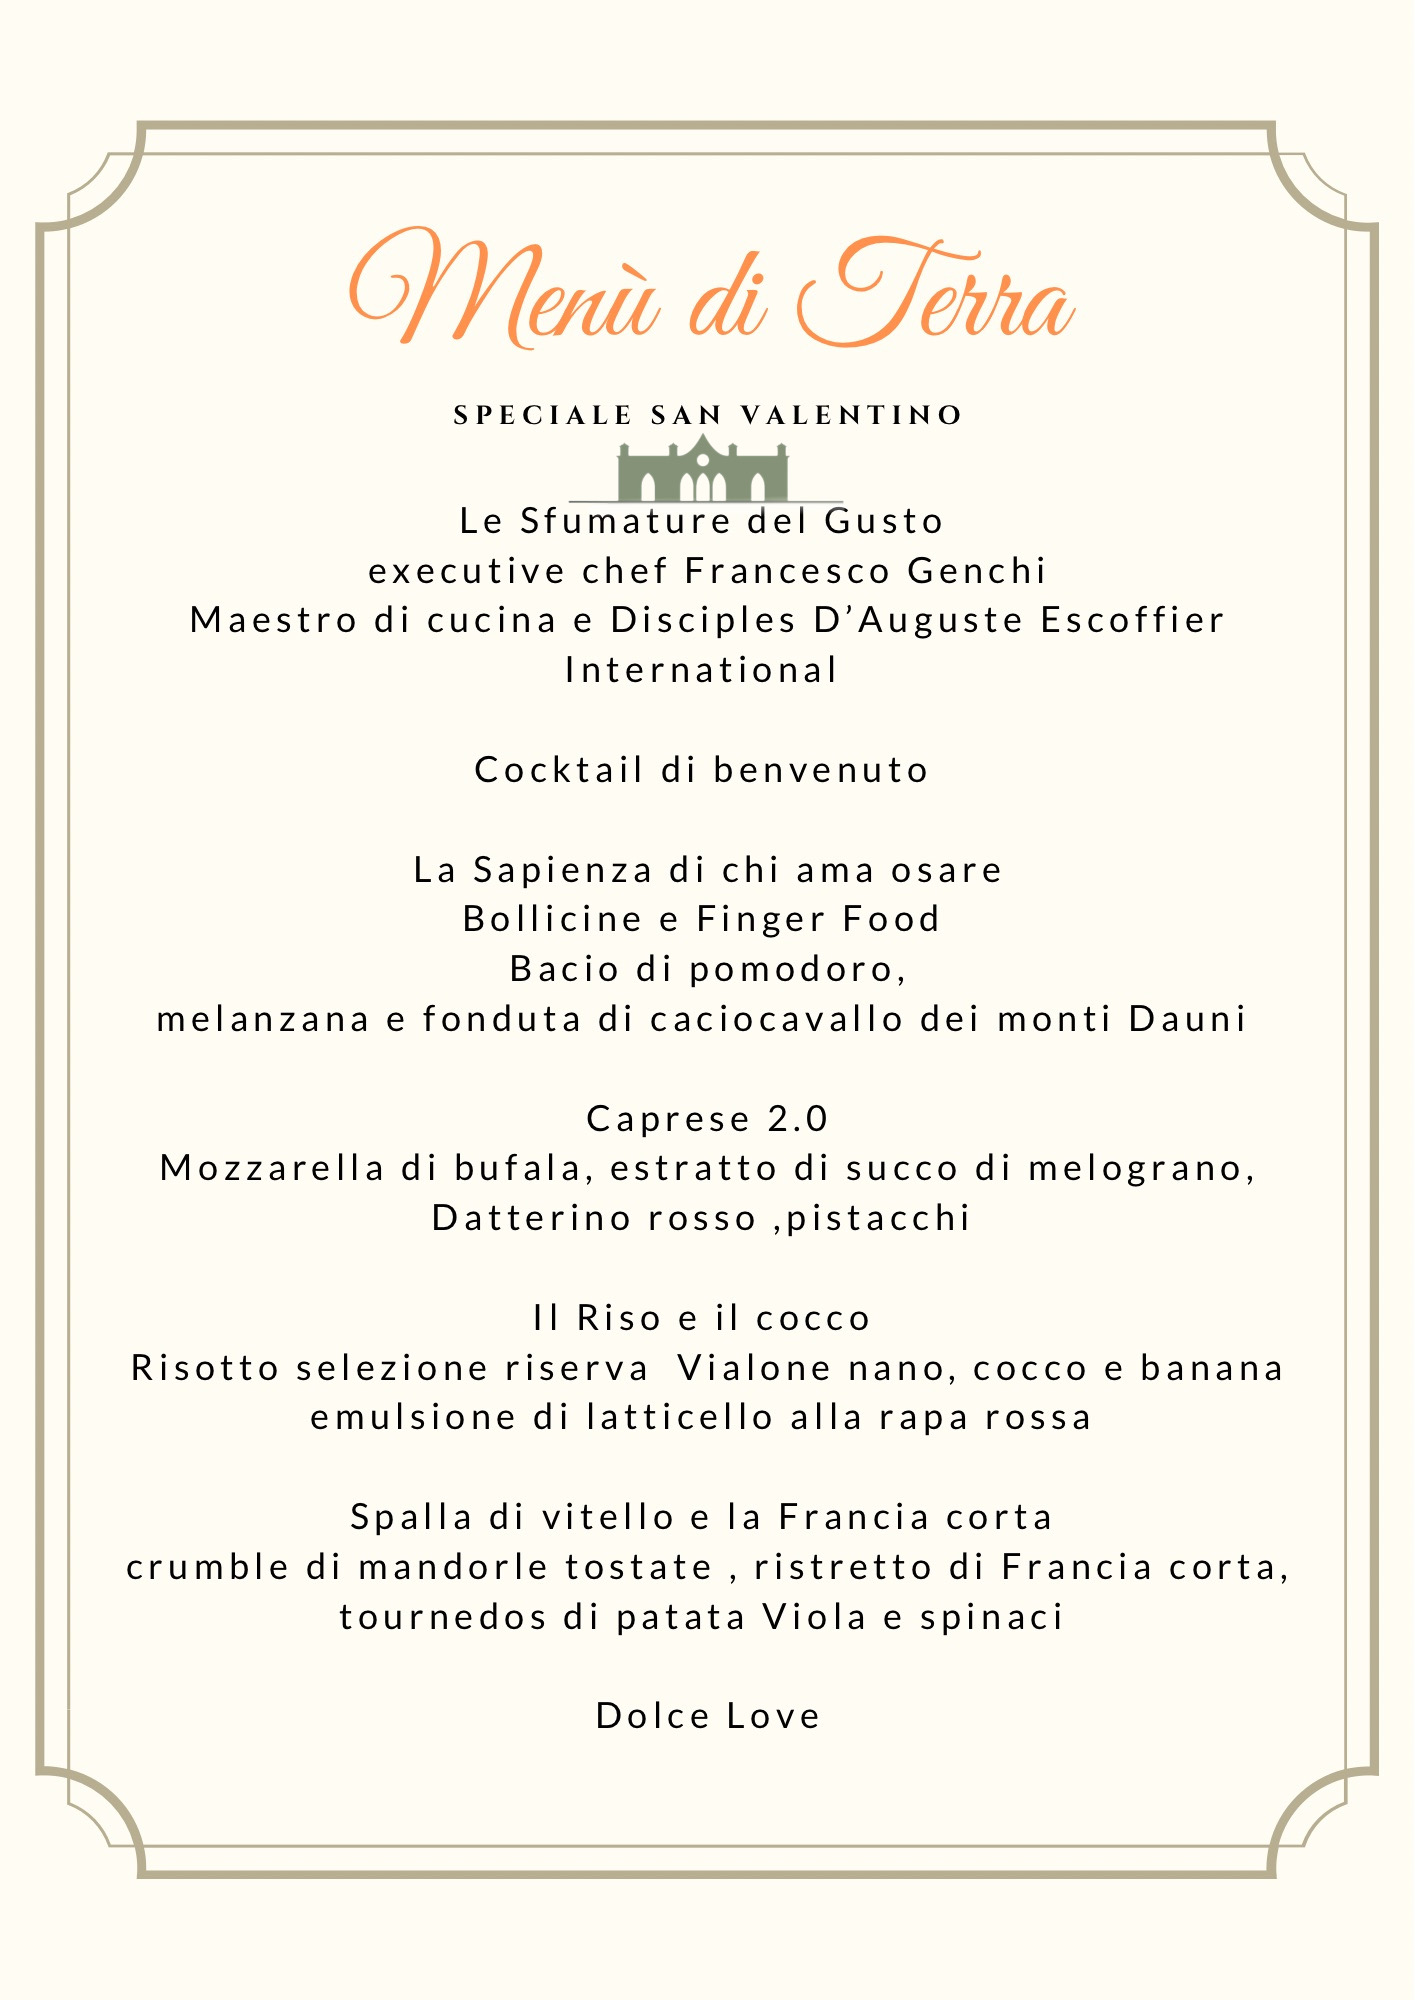 Speciale San Valentino al Grand Hotel Vigna Nocelli